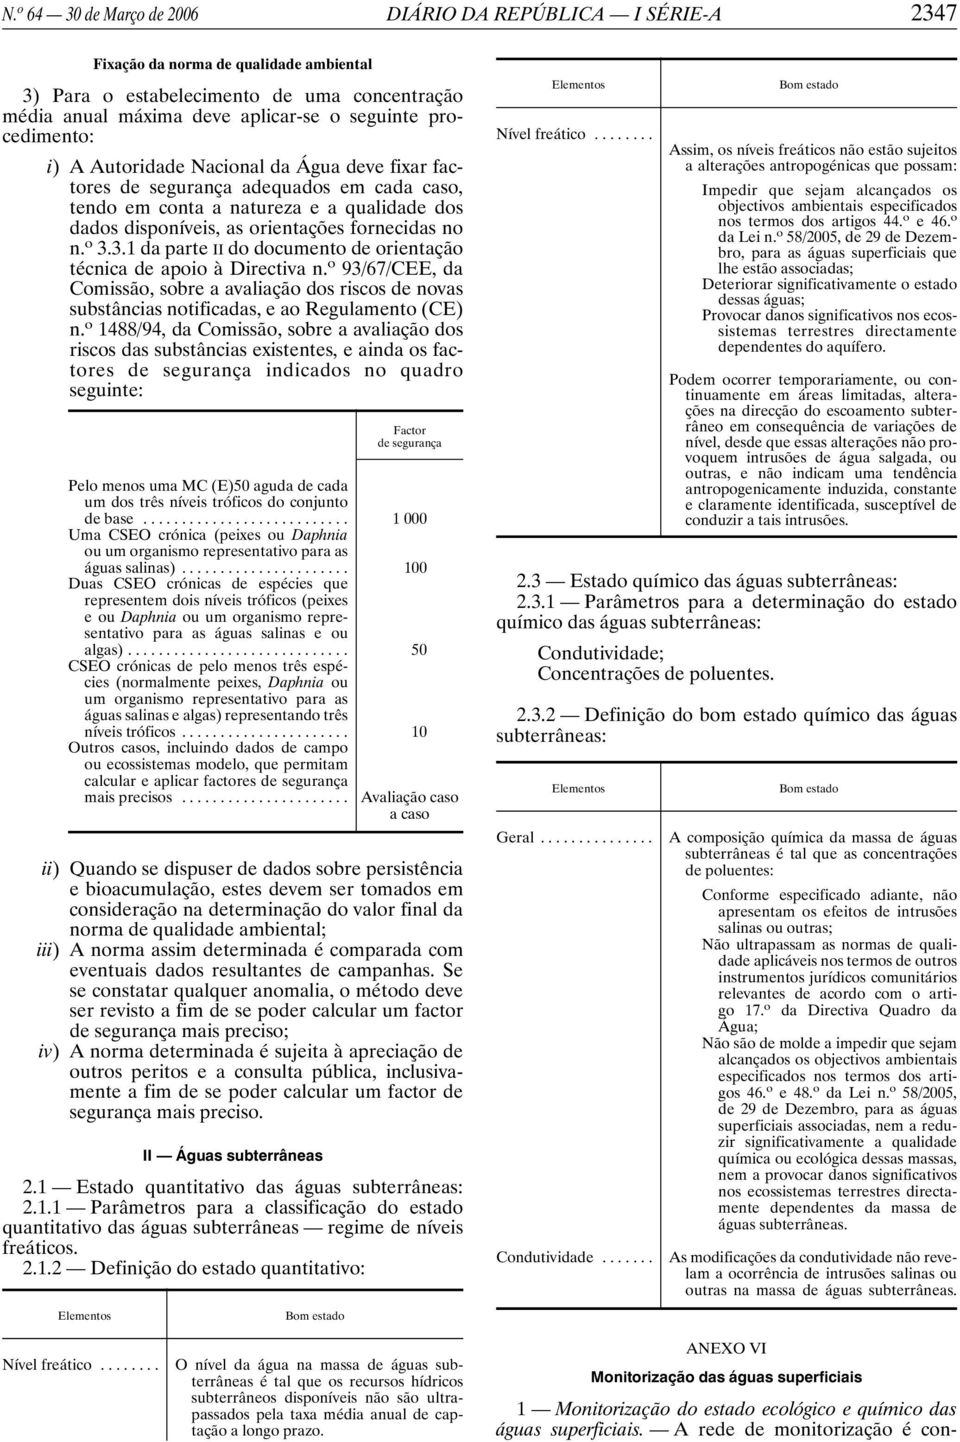 o 3.3.1 da parte II do documento de orientação técnica de apoio à Directiva n. o 93/67/CEE, da Comissão, sobre a avaliação dos riscos de novas substâncias notificadas, e ao Regulamento (CE) n.